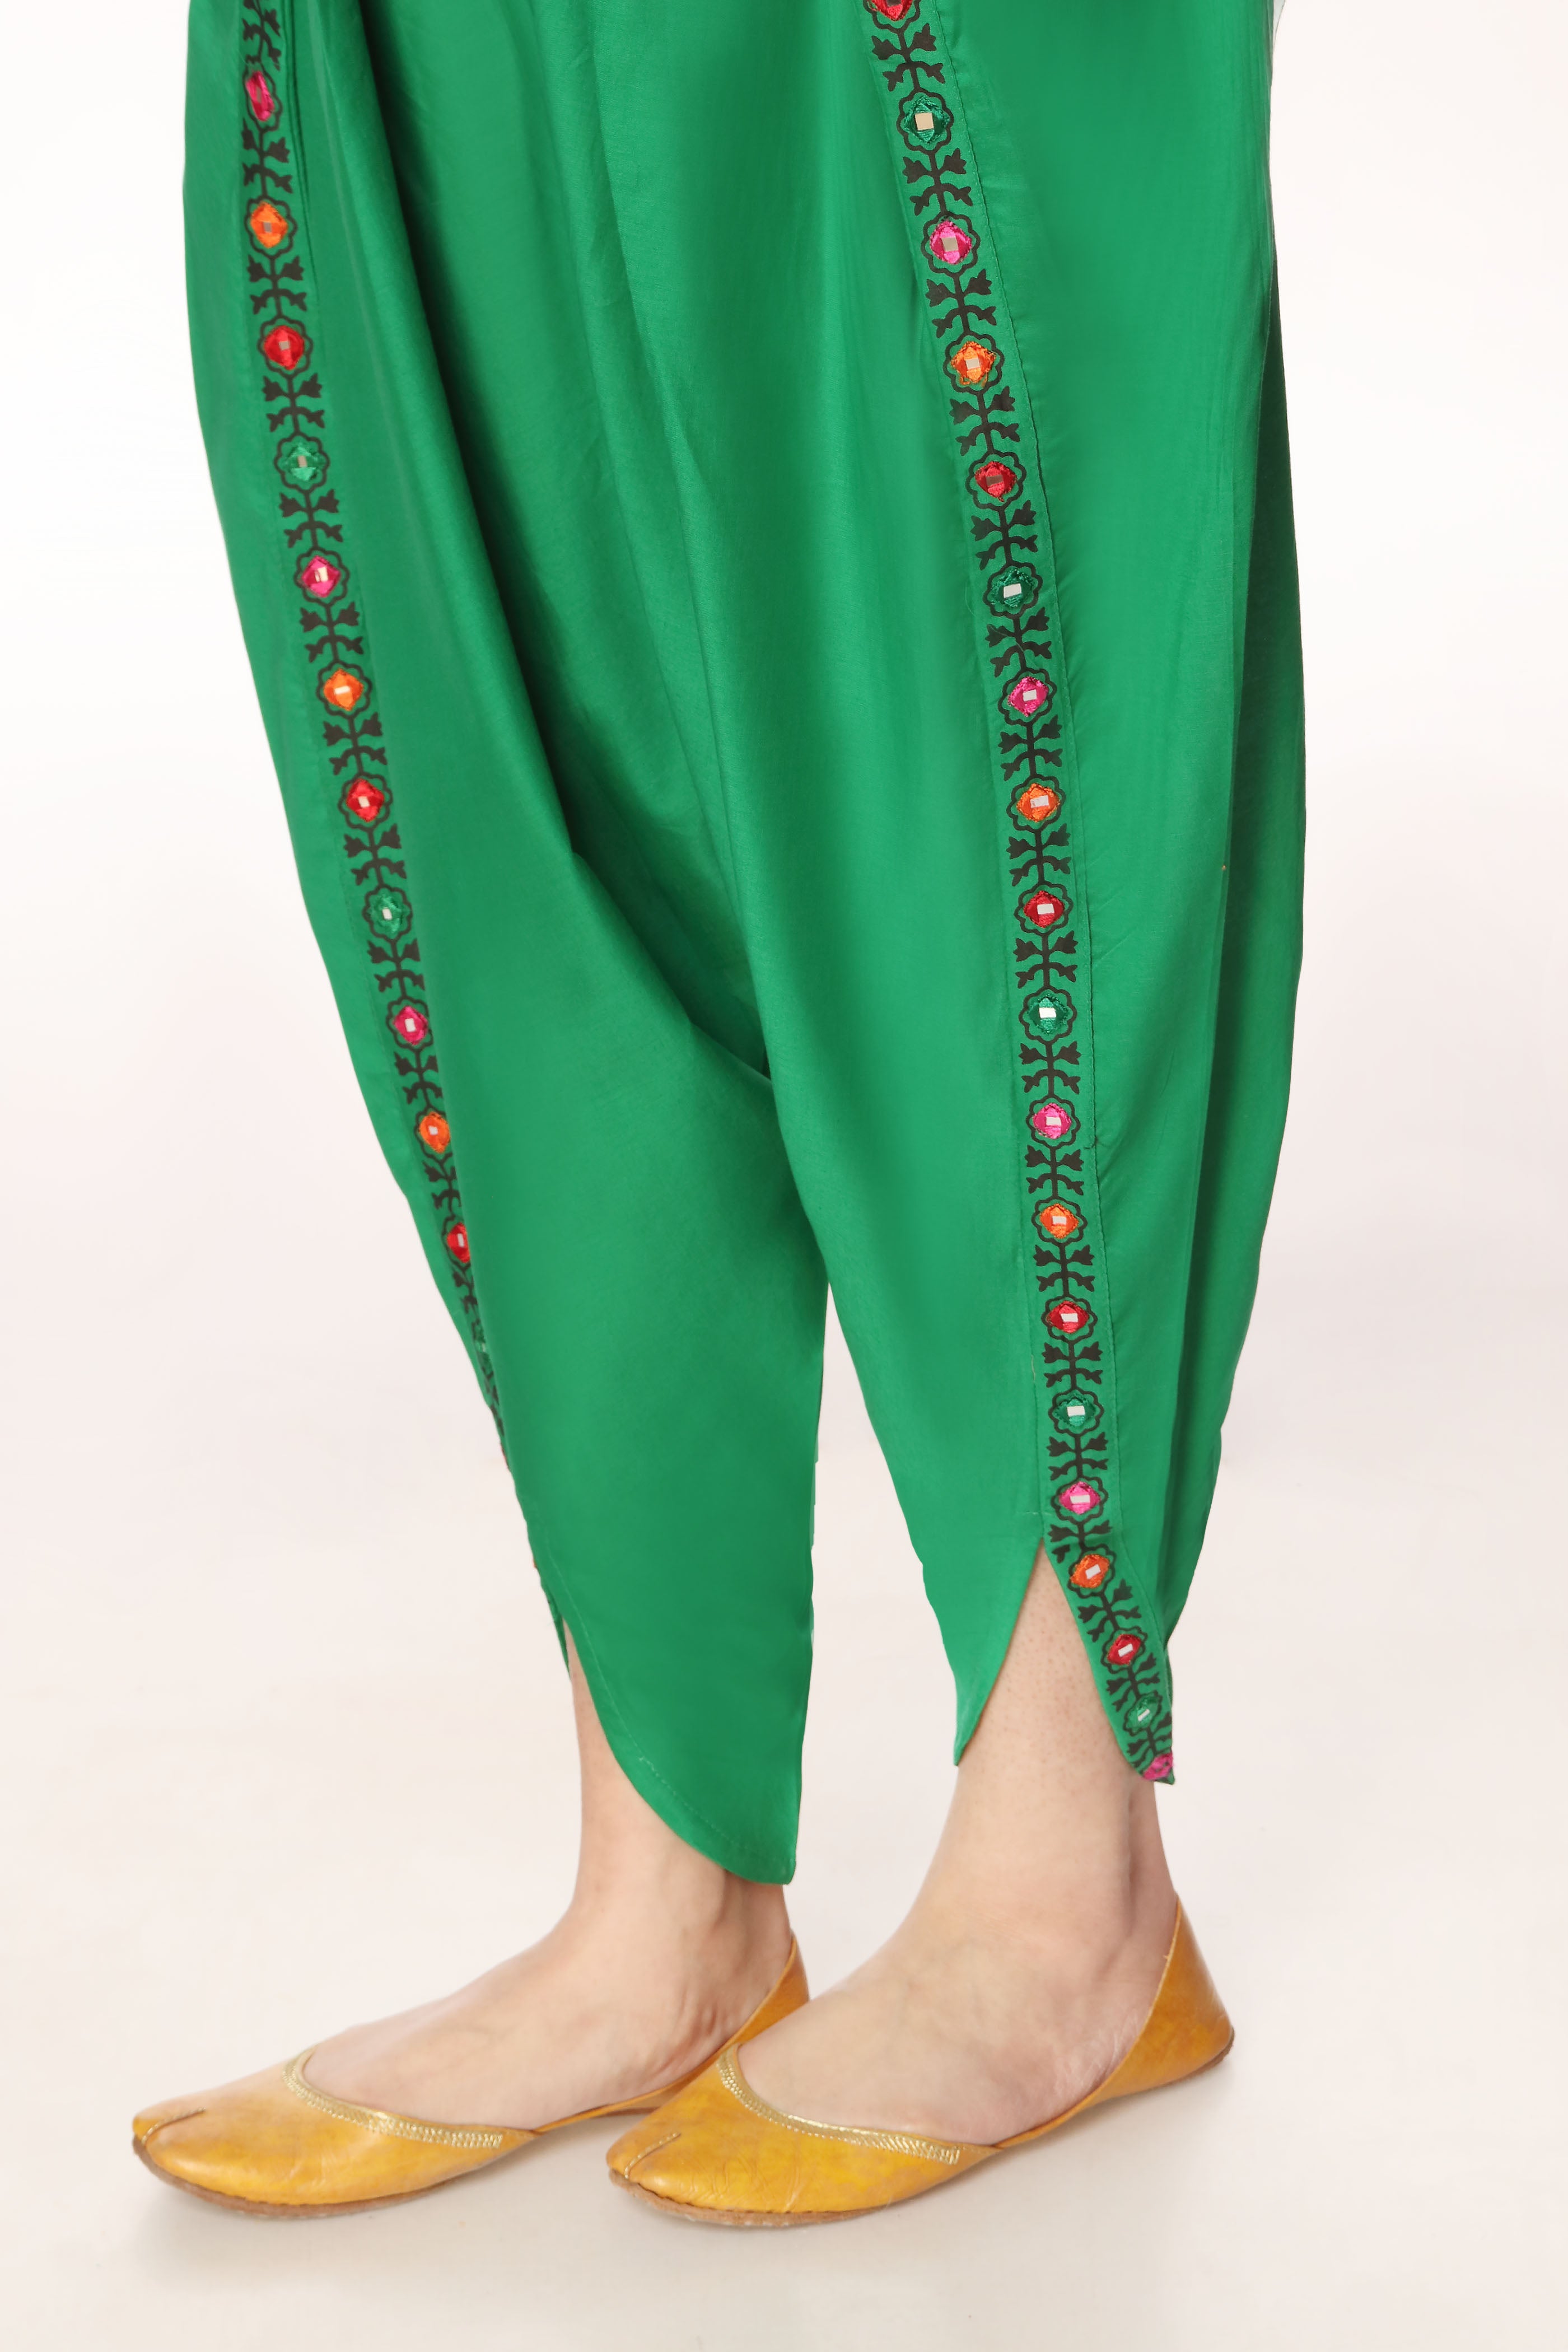 Tulip Sheesha in Green coloured Printed Lawn fabric 2